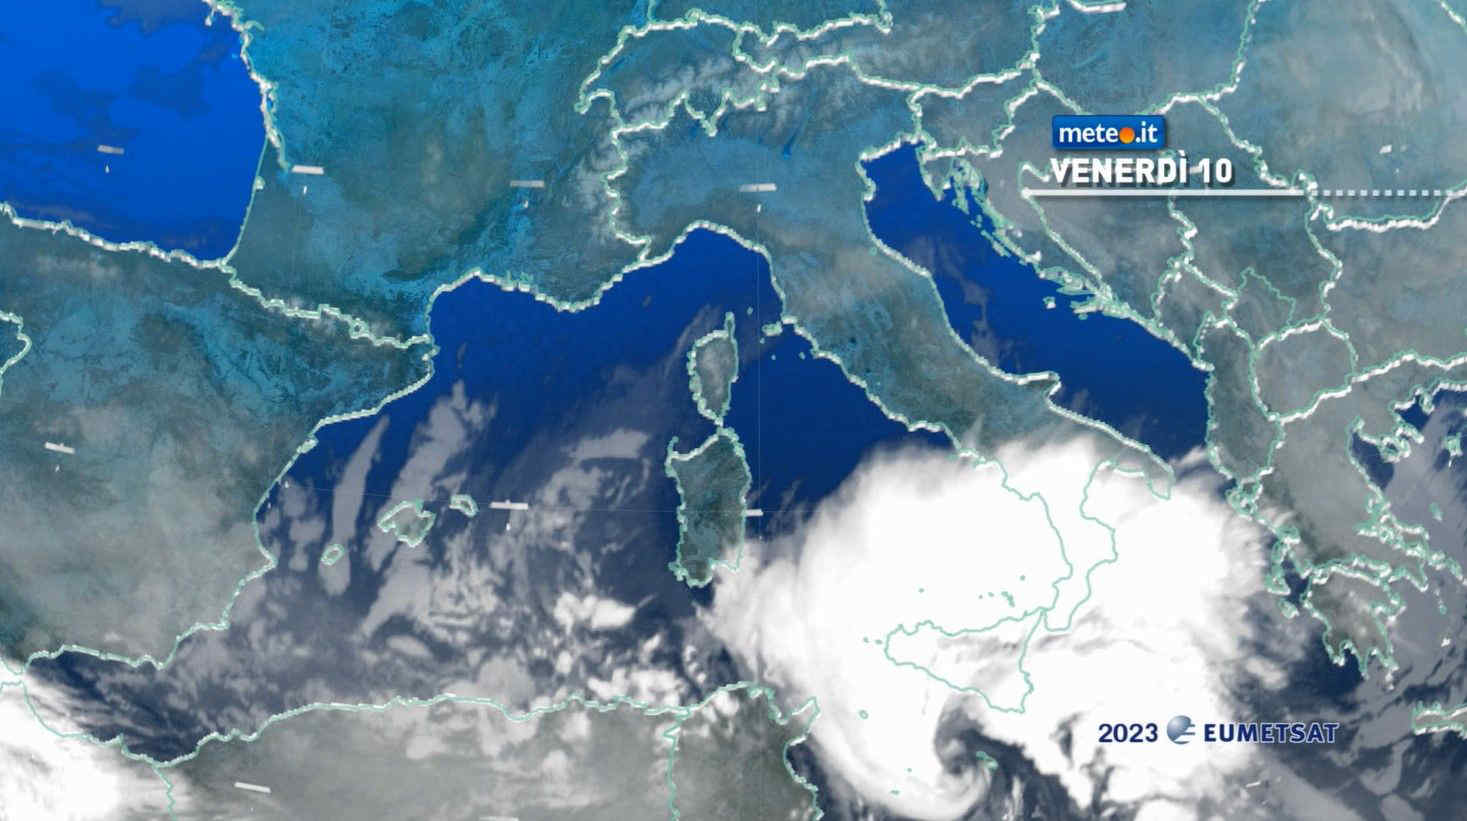 Meteo, ciclone Helios sulla Sicilia: 10 febbraio di forte maltempo con raffiche a 100 km/h